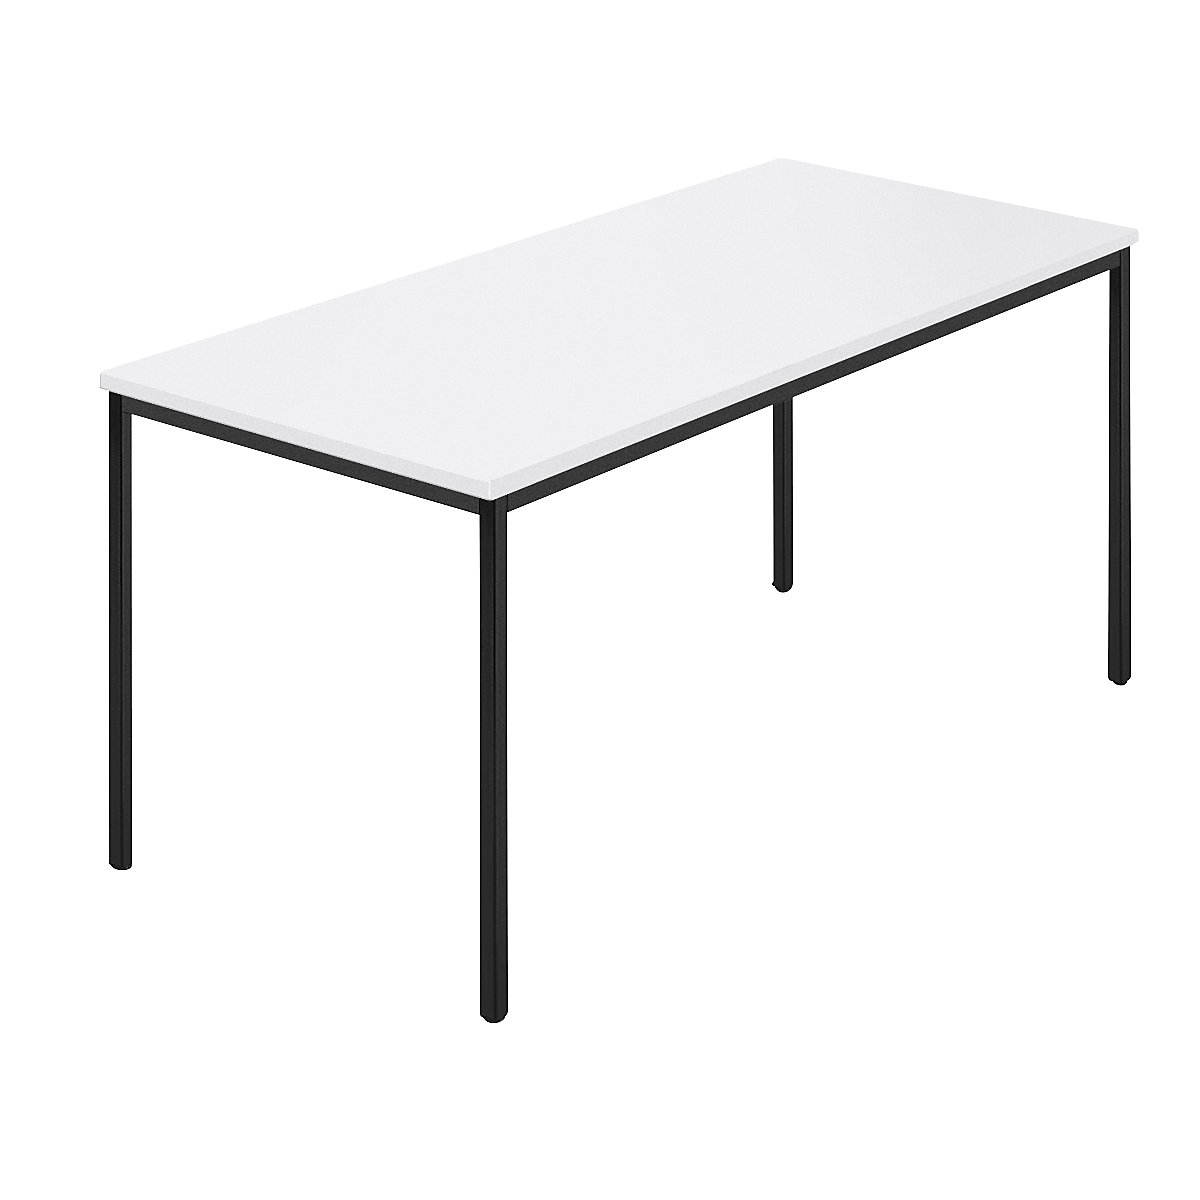 Stół prostokątny, czworokątna rurka lakierowana, szer. x głęb. 1500 x 800 mm, biały / antracyt-7